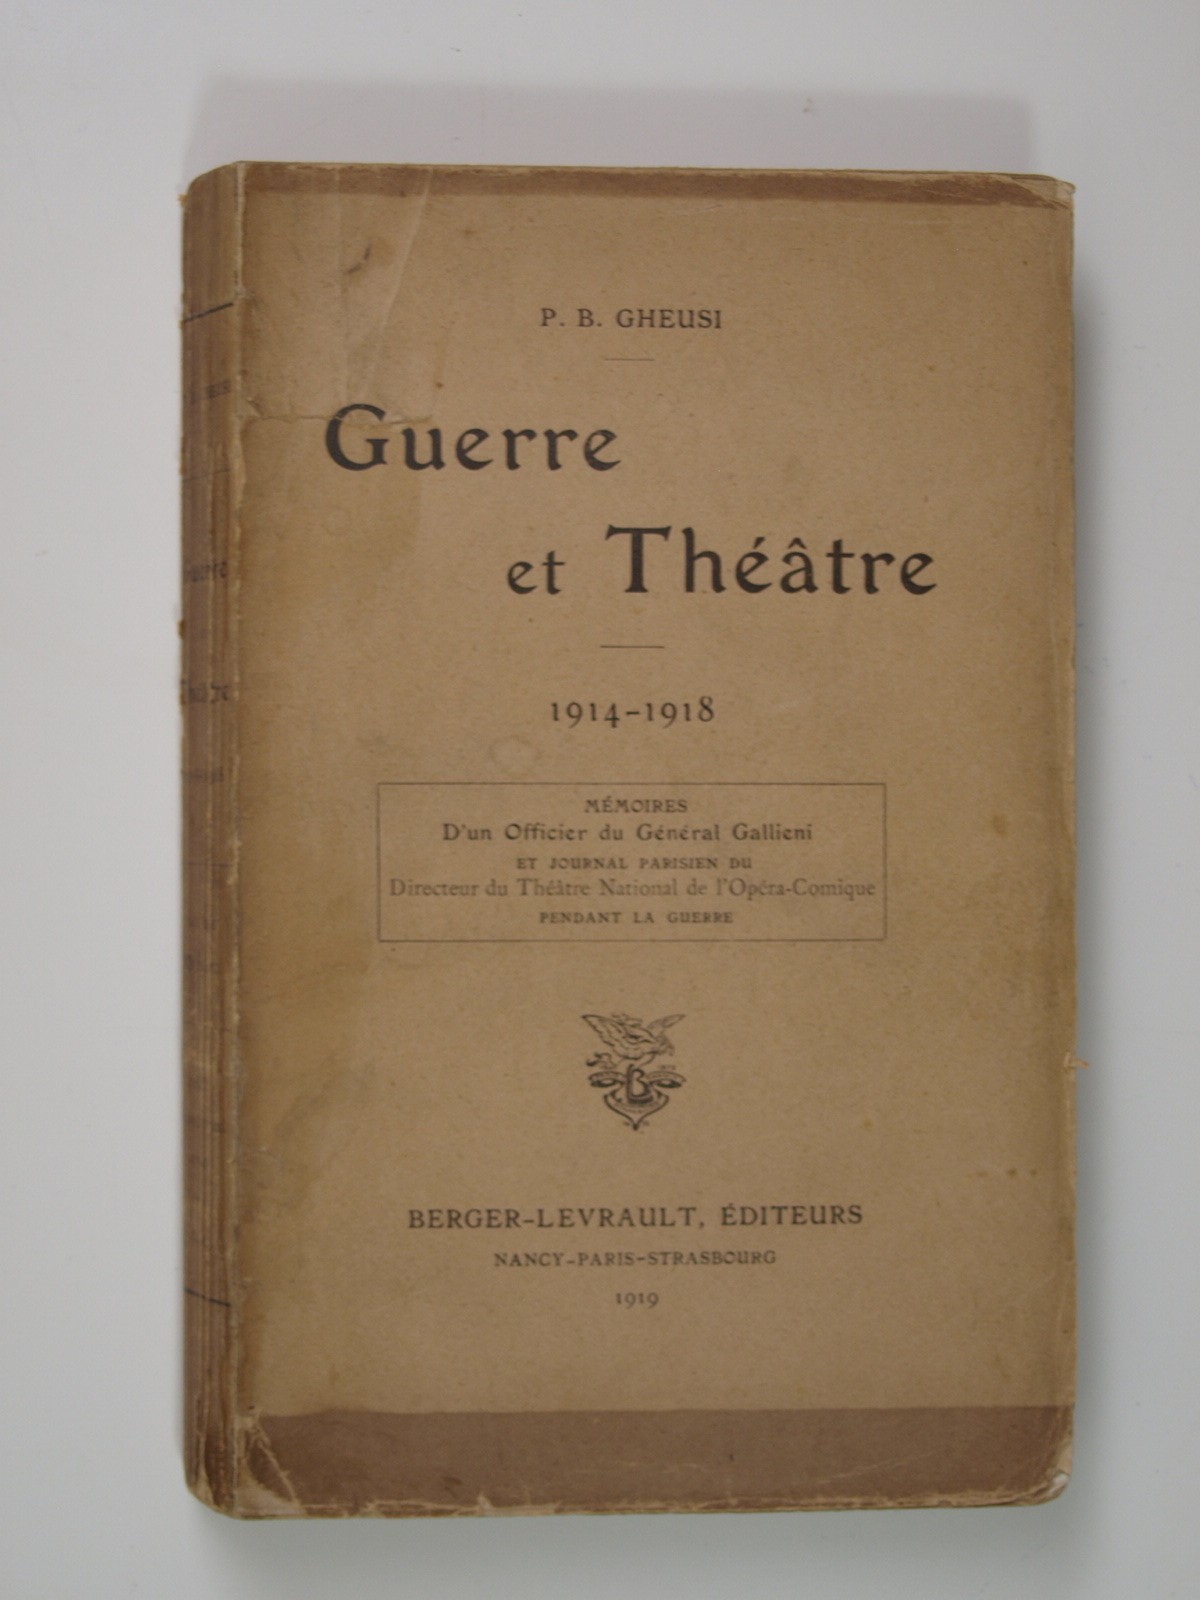 Gheusi P. B. : Guerre et Théâtre 1914-1918